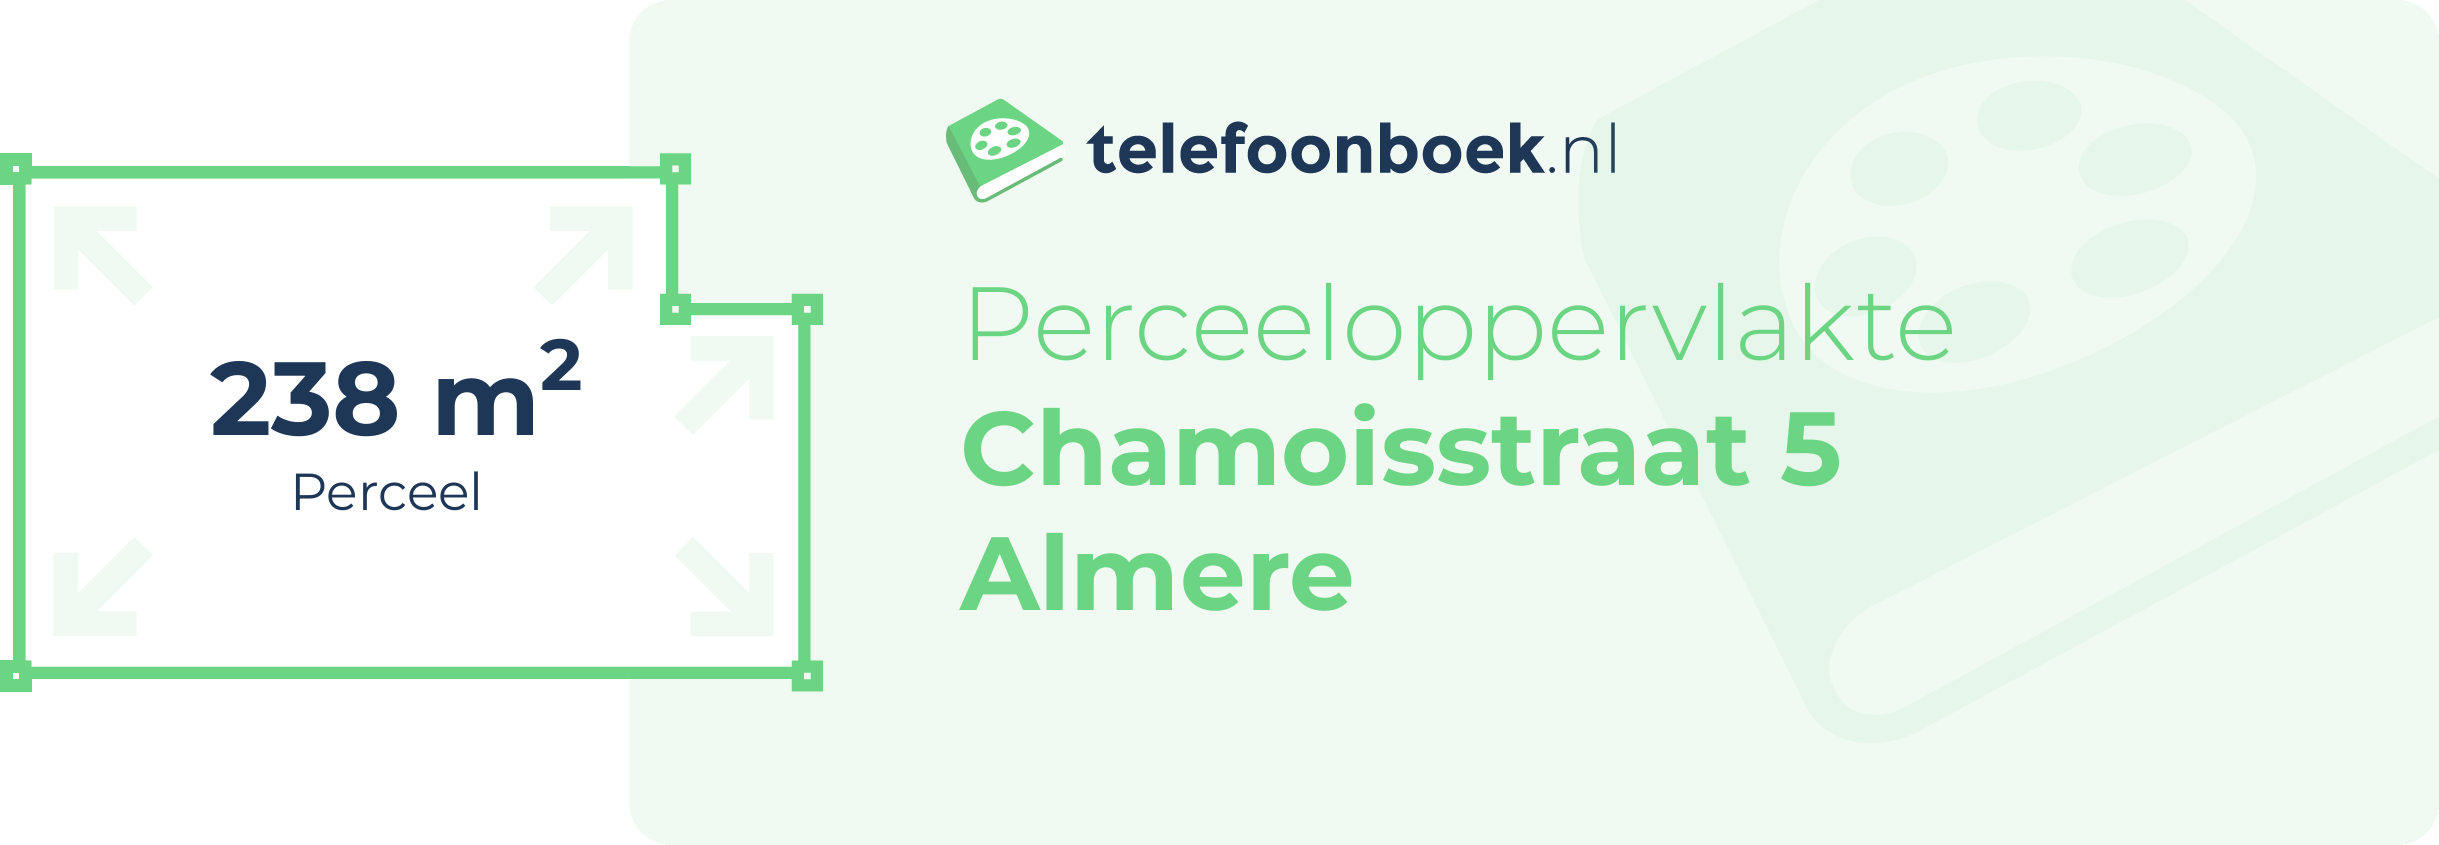 Perceeloppervlakte Chamoisstraat 5 Almere